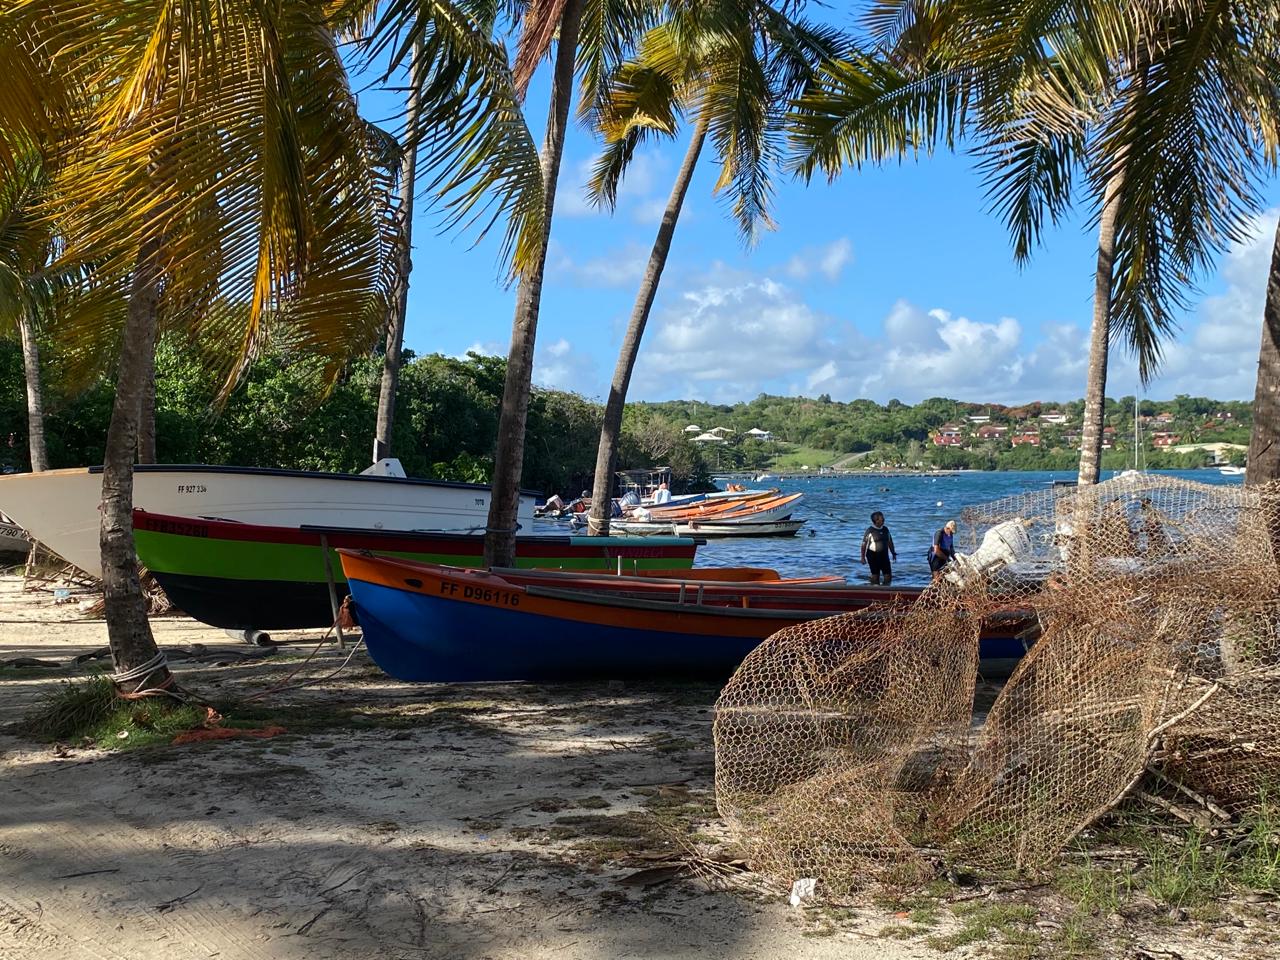     Bruxelles débloque les aides pour renouveler les flottes de pêche en Guadeloupe et en Martinique

